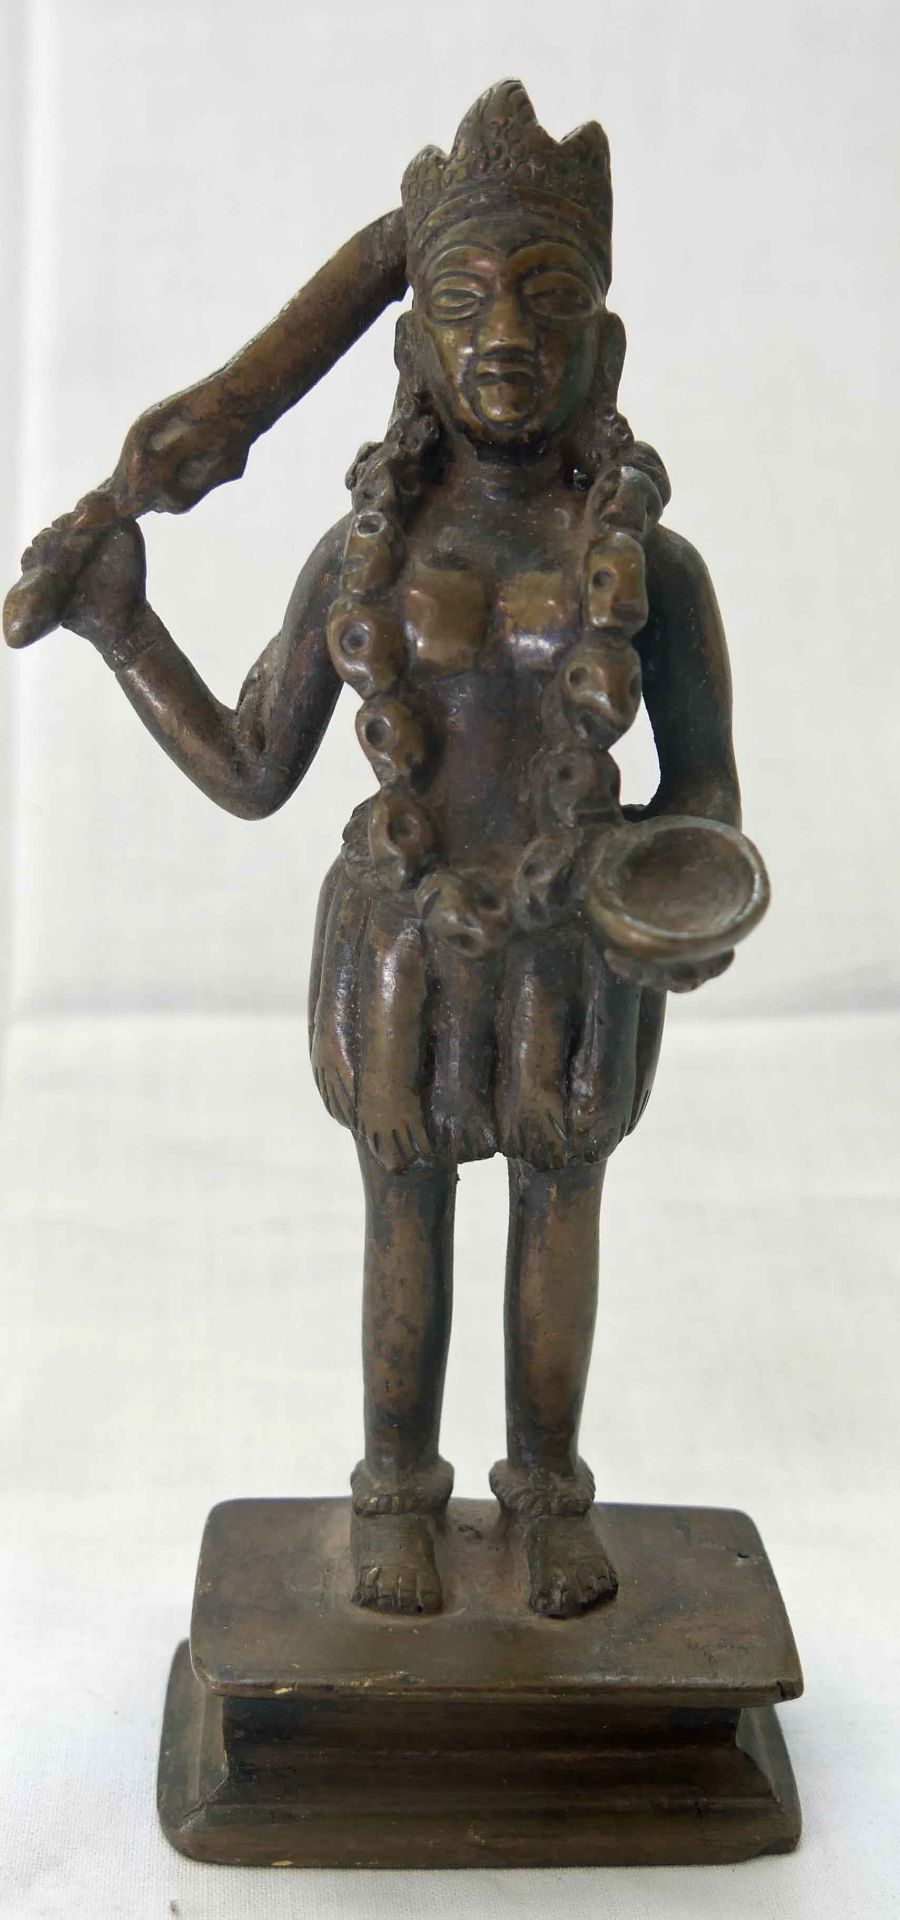 Aus Auflösung, Statue "indische Gottheit mit Schwert", wohl 19. Jahrhundert, ca. 17 cm hoch, am